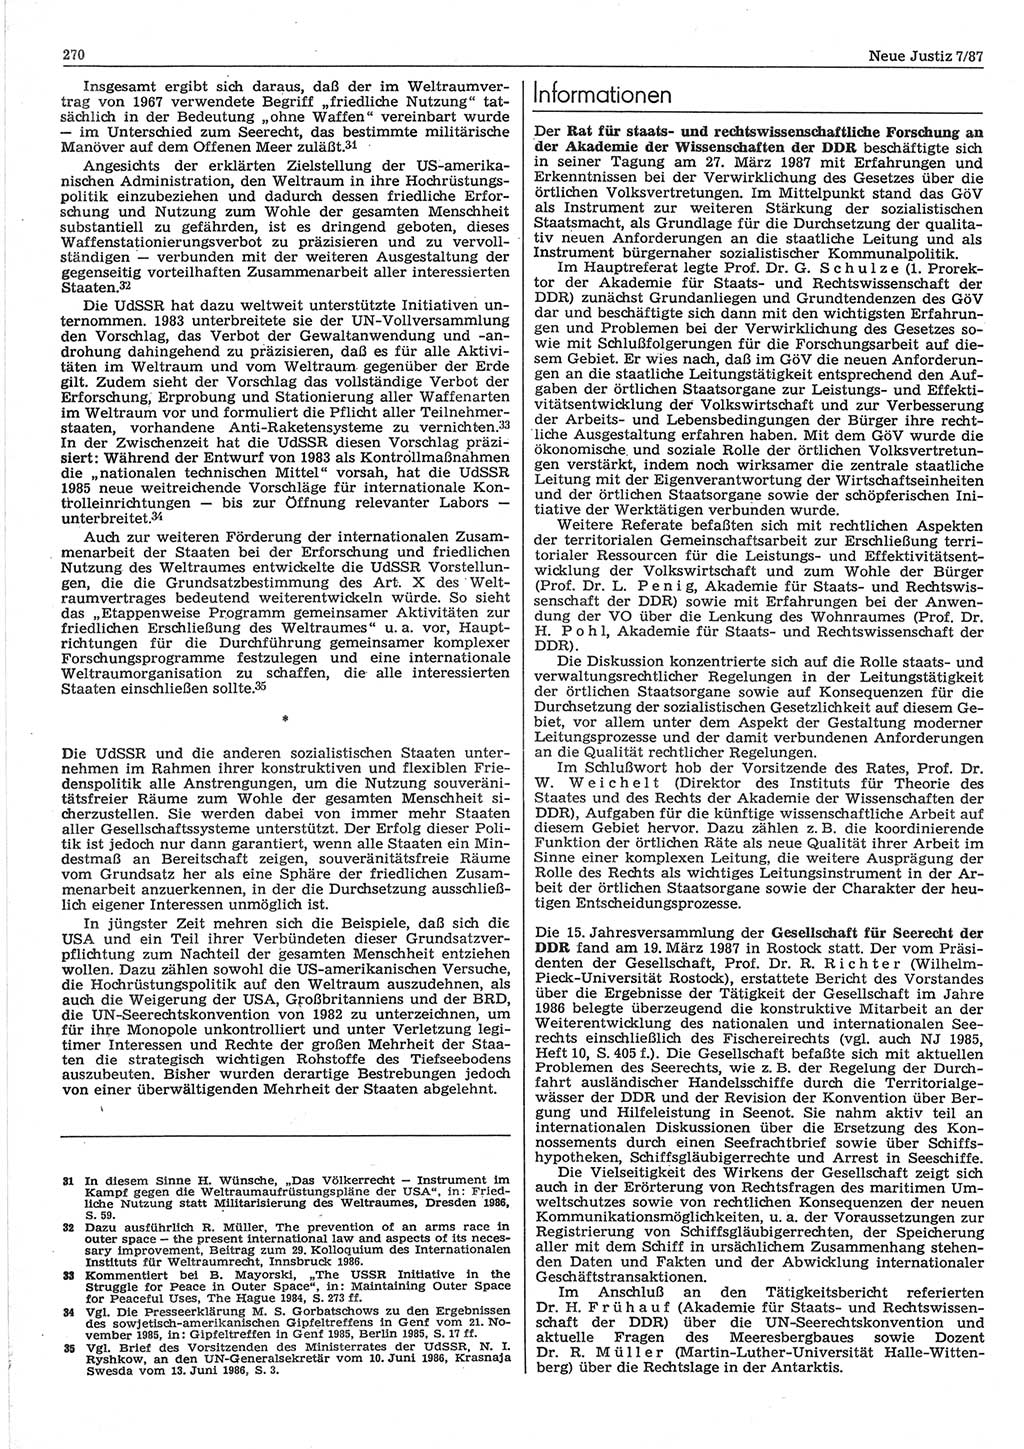 Neue Justiz (NJ), Zeitschrift für sozialistisches Recht und Gesetzlichkeit [Deutsche Demokratische Republik (DDR)], 41. Jahrgang 1987, Seite 270 (NJ DDR 1987, S. 270)